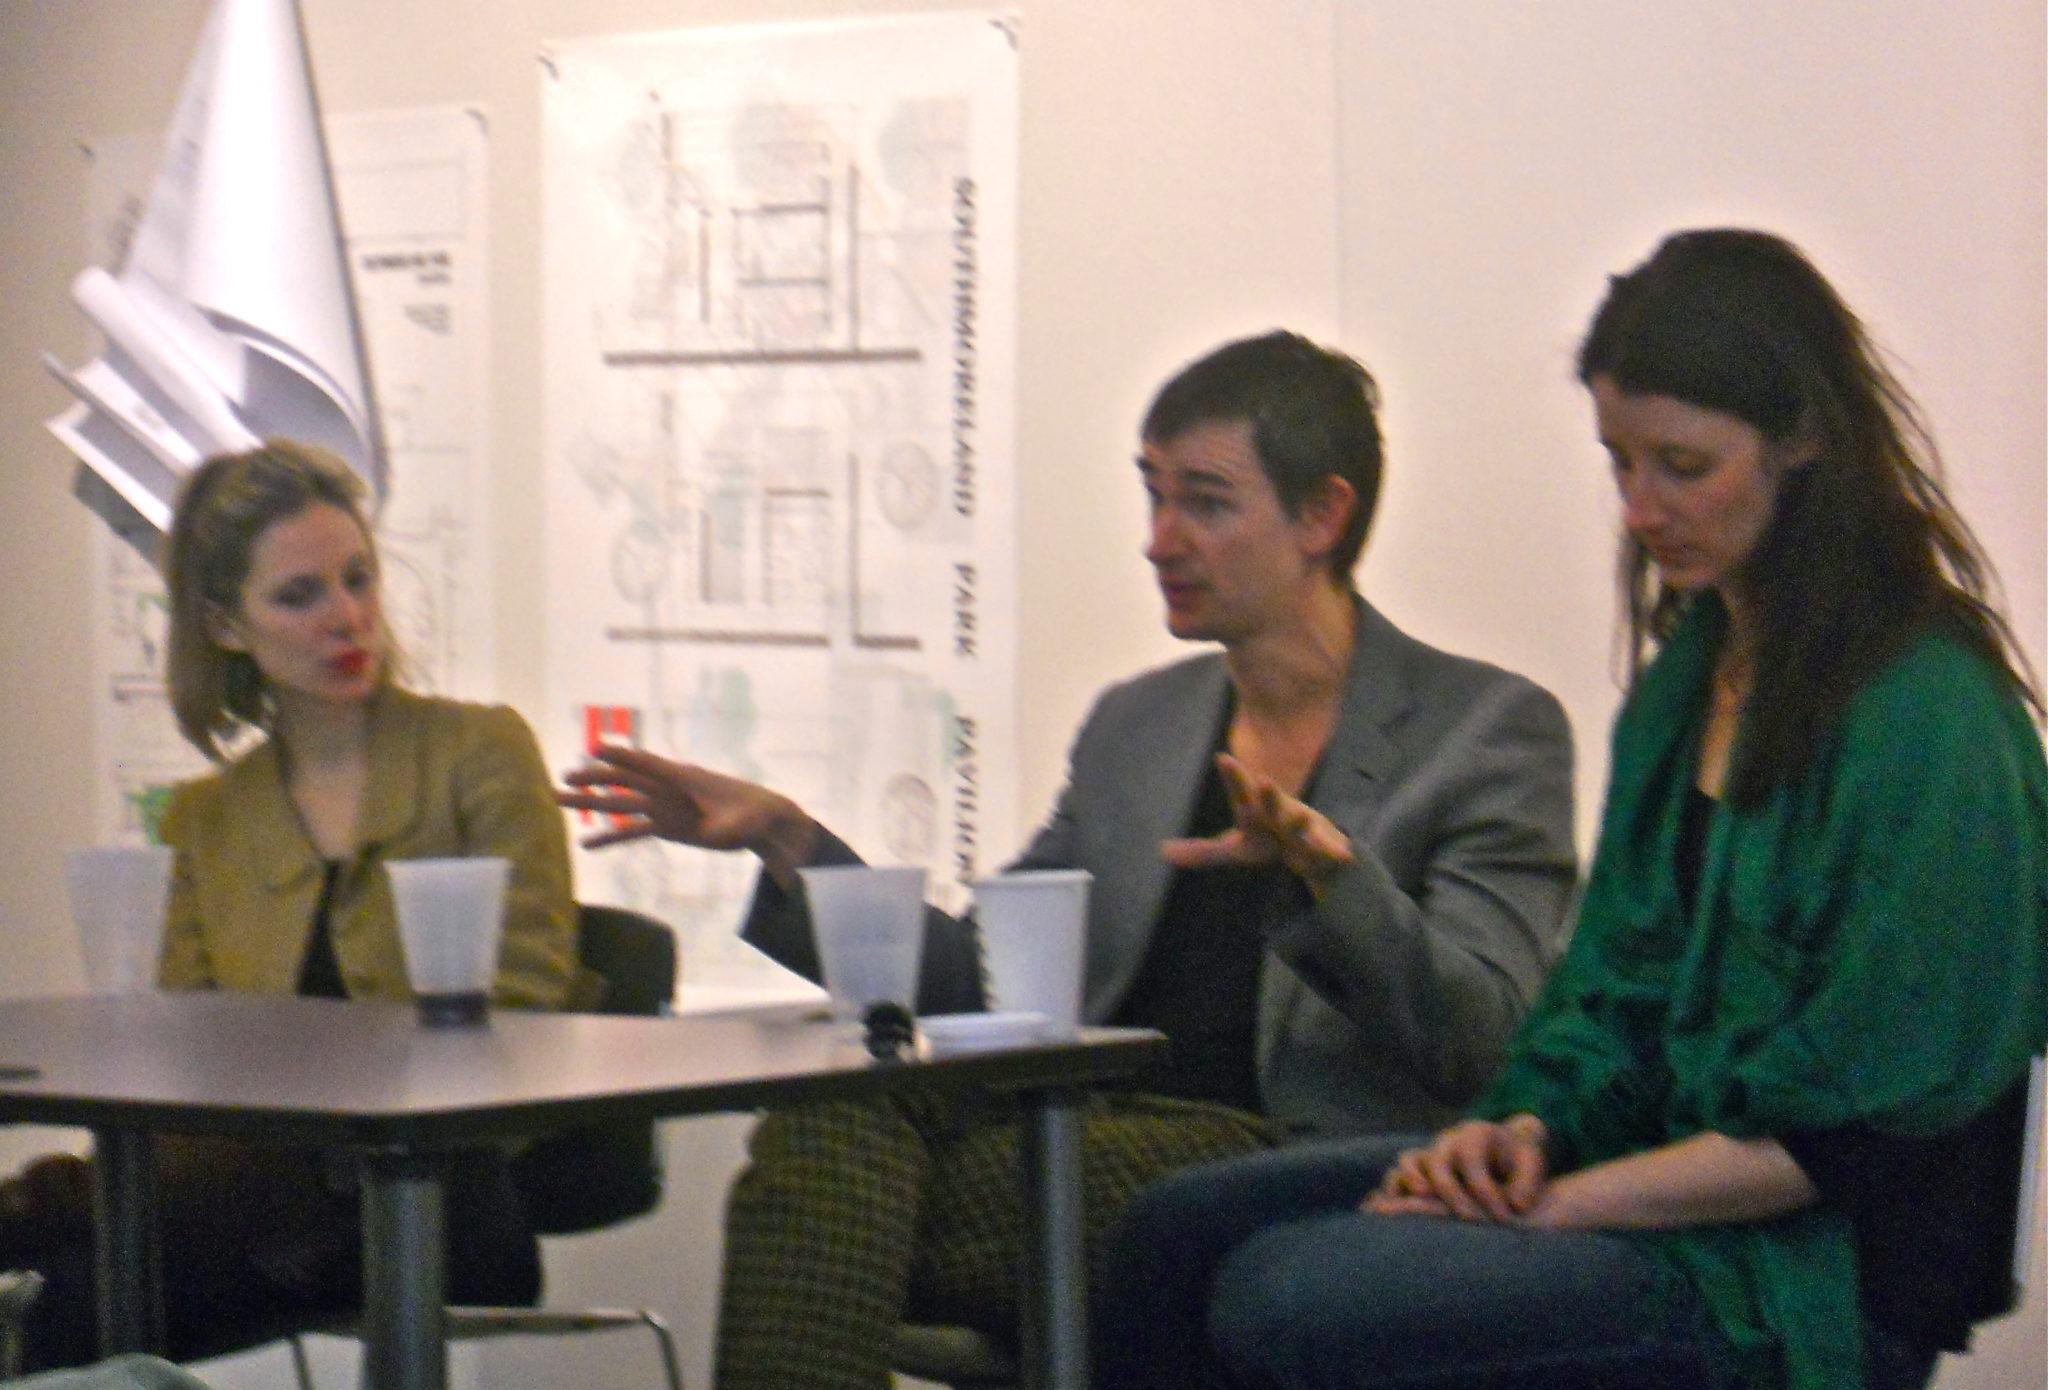 Left to right: Gemma Sieff, Clancy Martin, Christie Hodgen